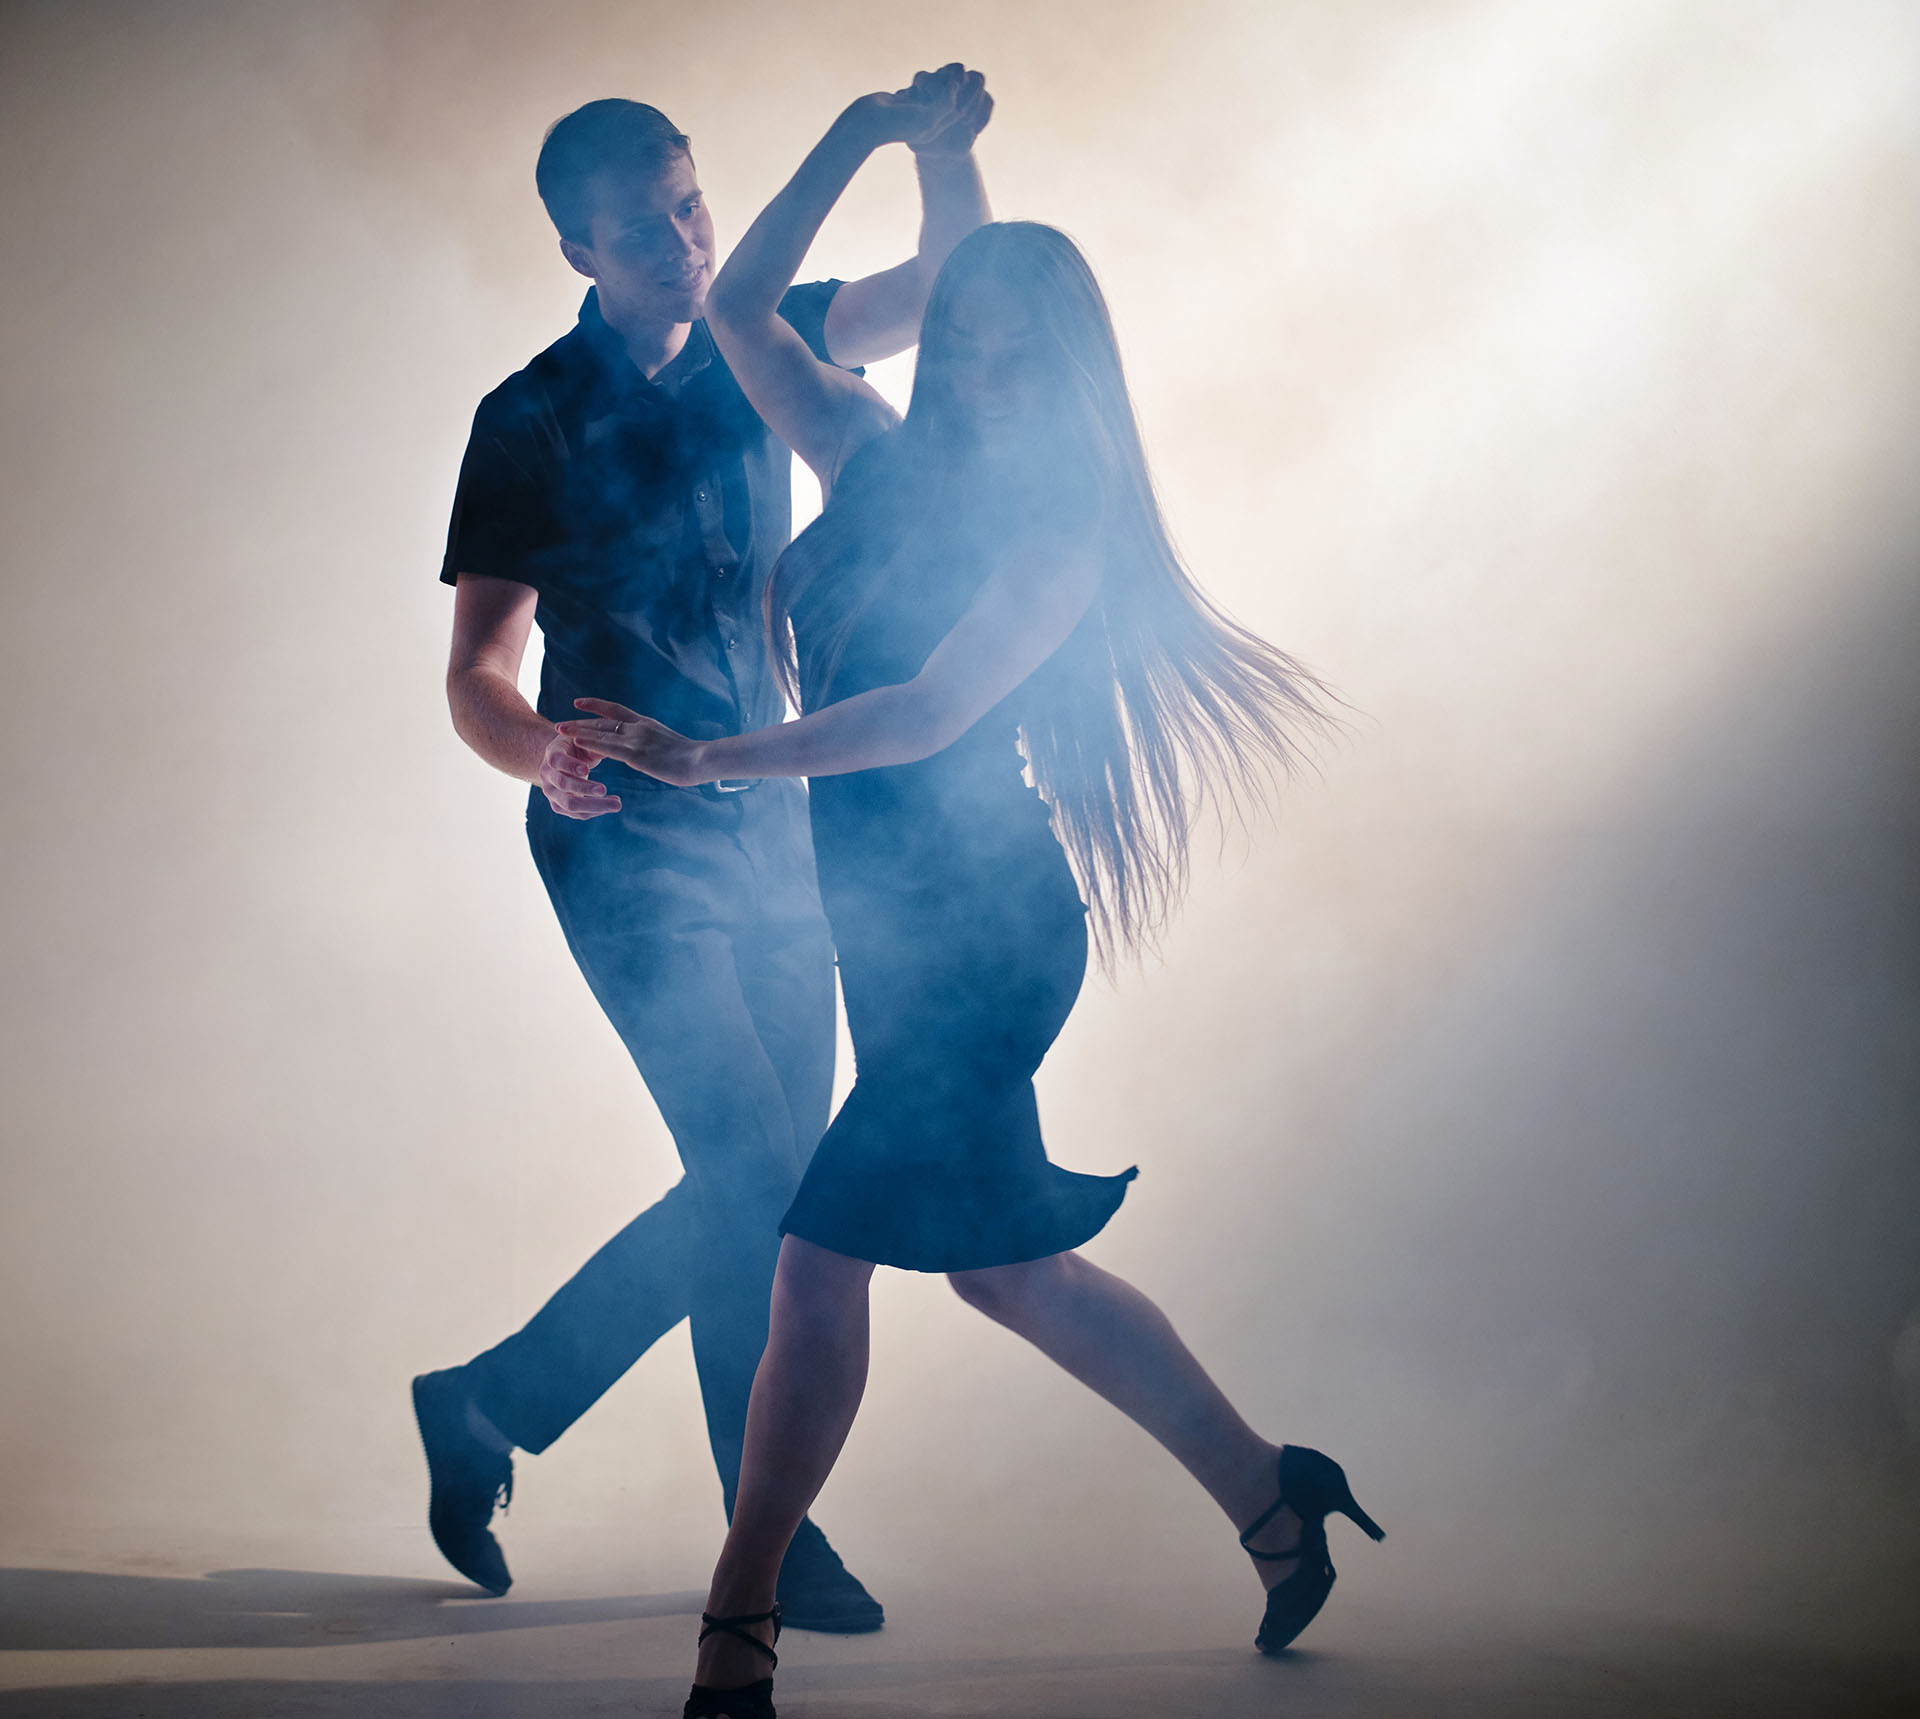 Recordar la figura, aprender cosas nuevas y trabajar la coordinación, nos enfoca en esa actividad de manera exclusiva por lo tanto se vive una situación de presente reconfortante al bailar salsa

(Getty Images)